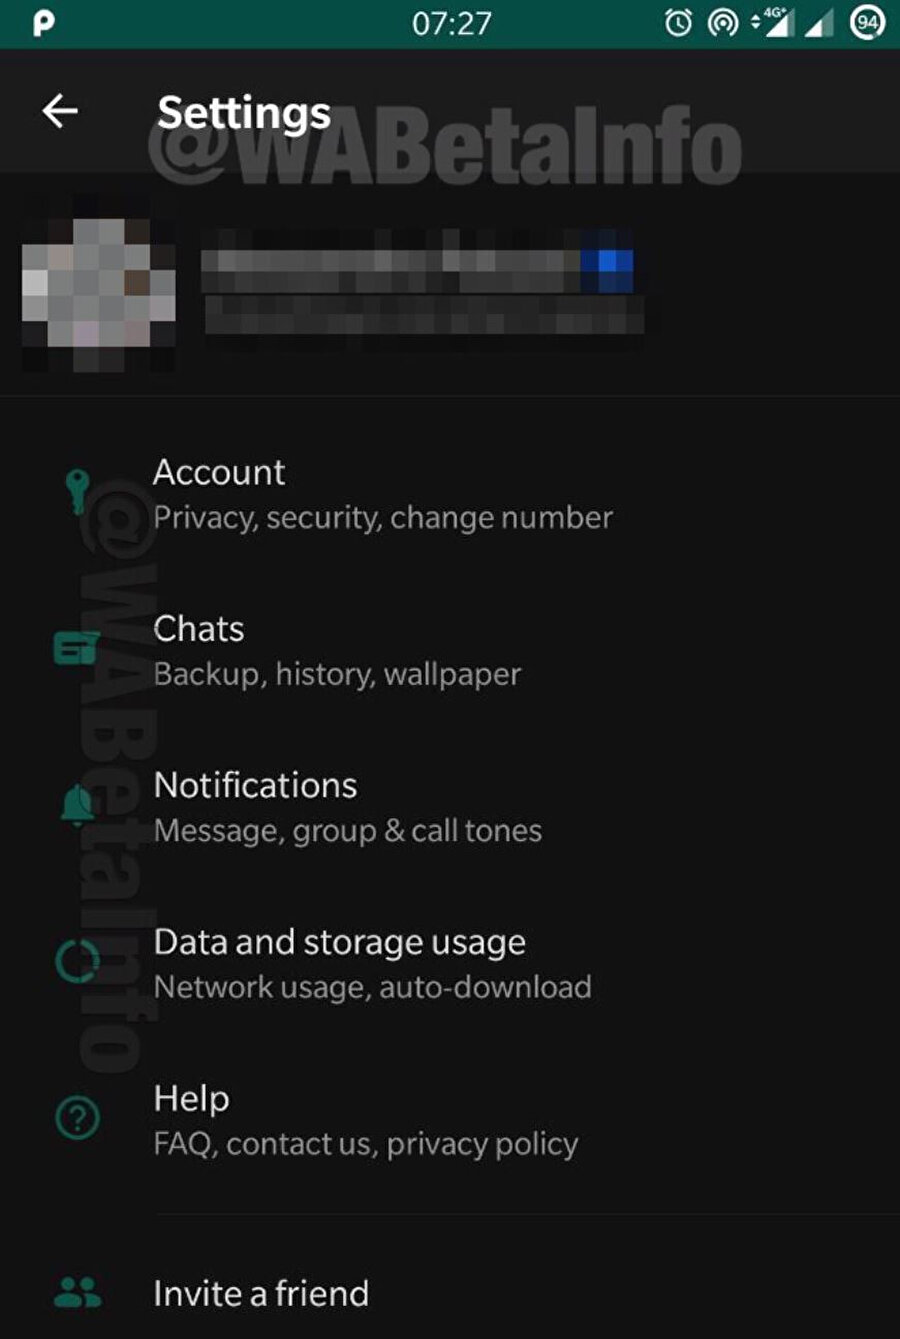 2020'nin ilk aylarından itibaren karanlık modun WhatsApp için aktif olması bekleniyor.